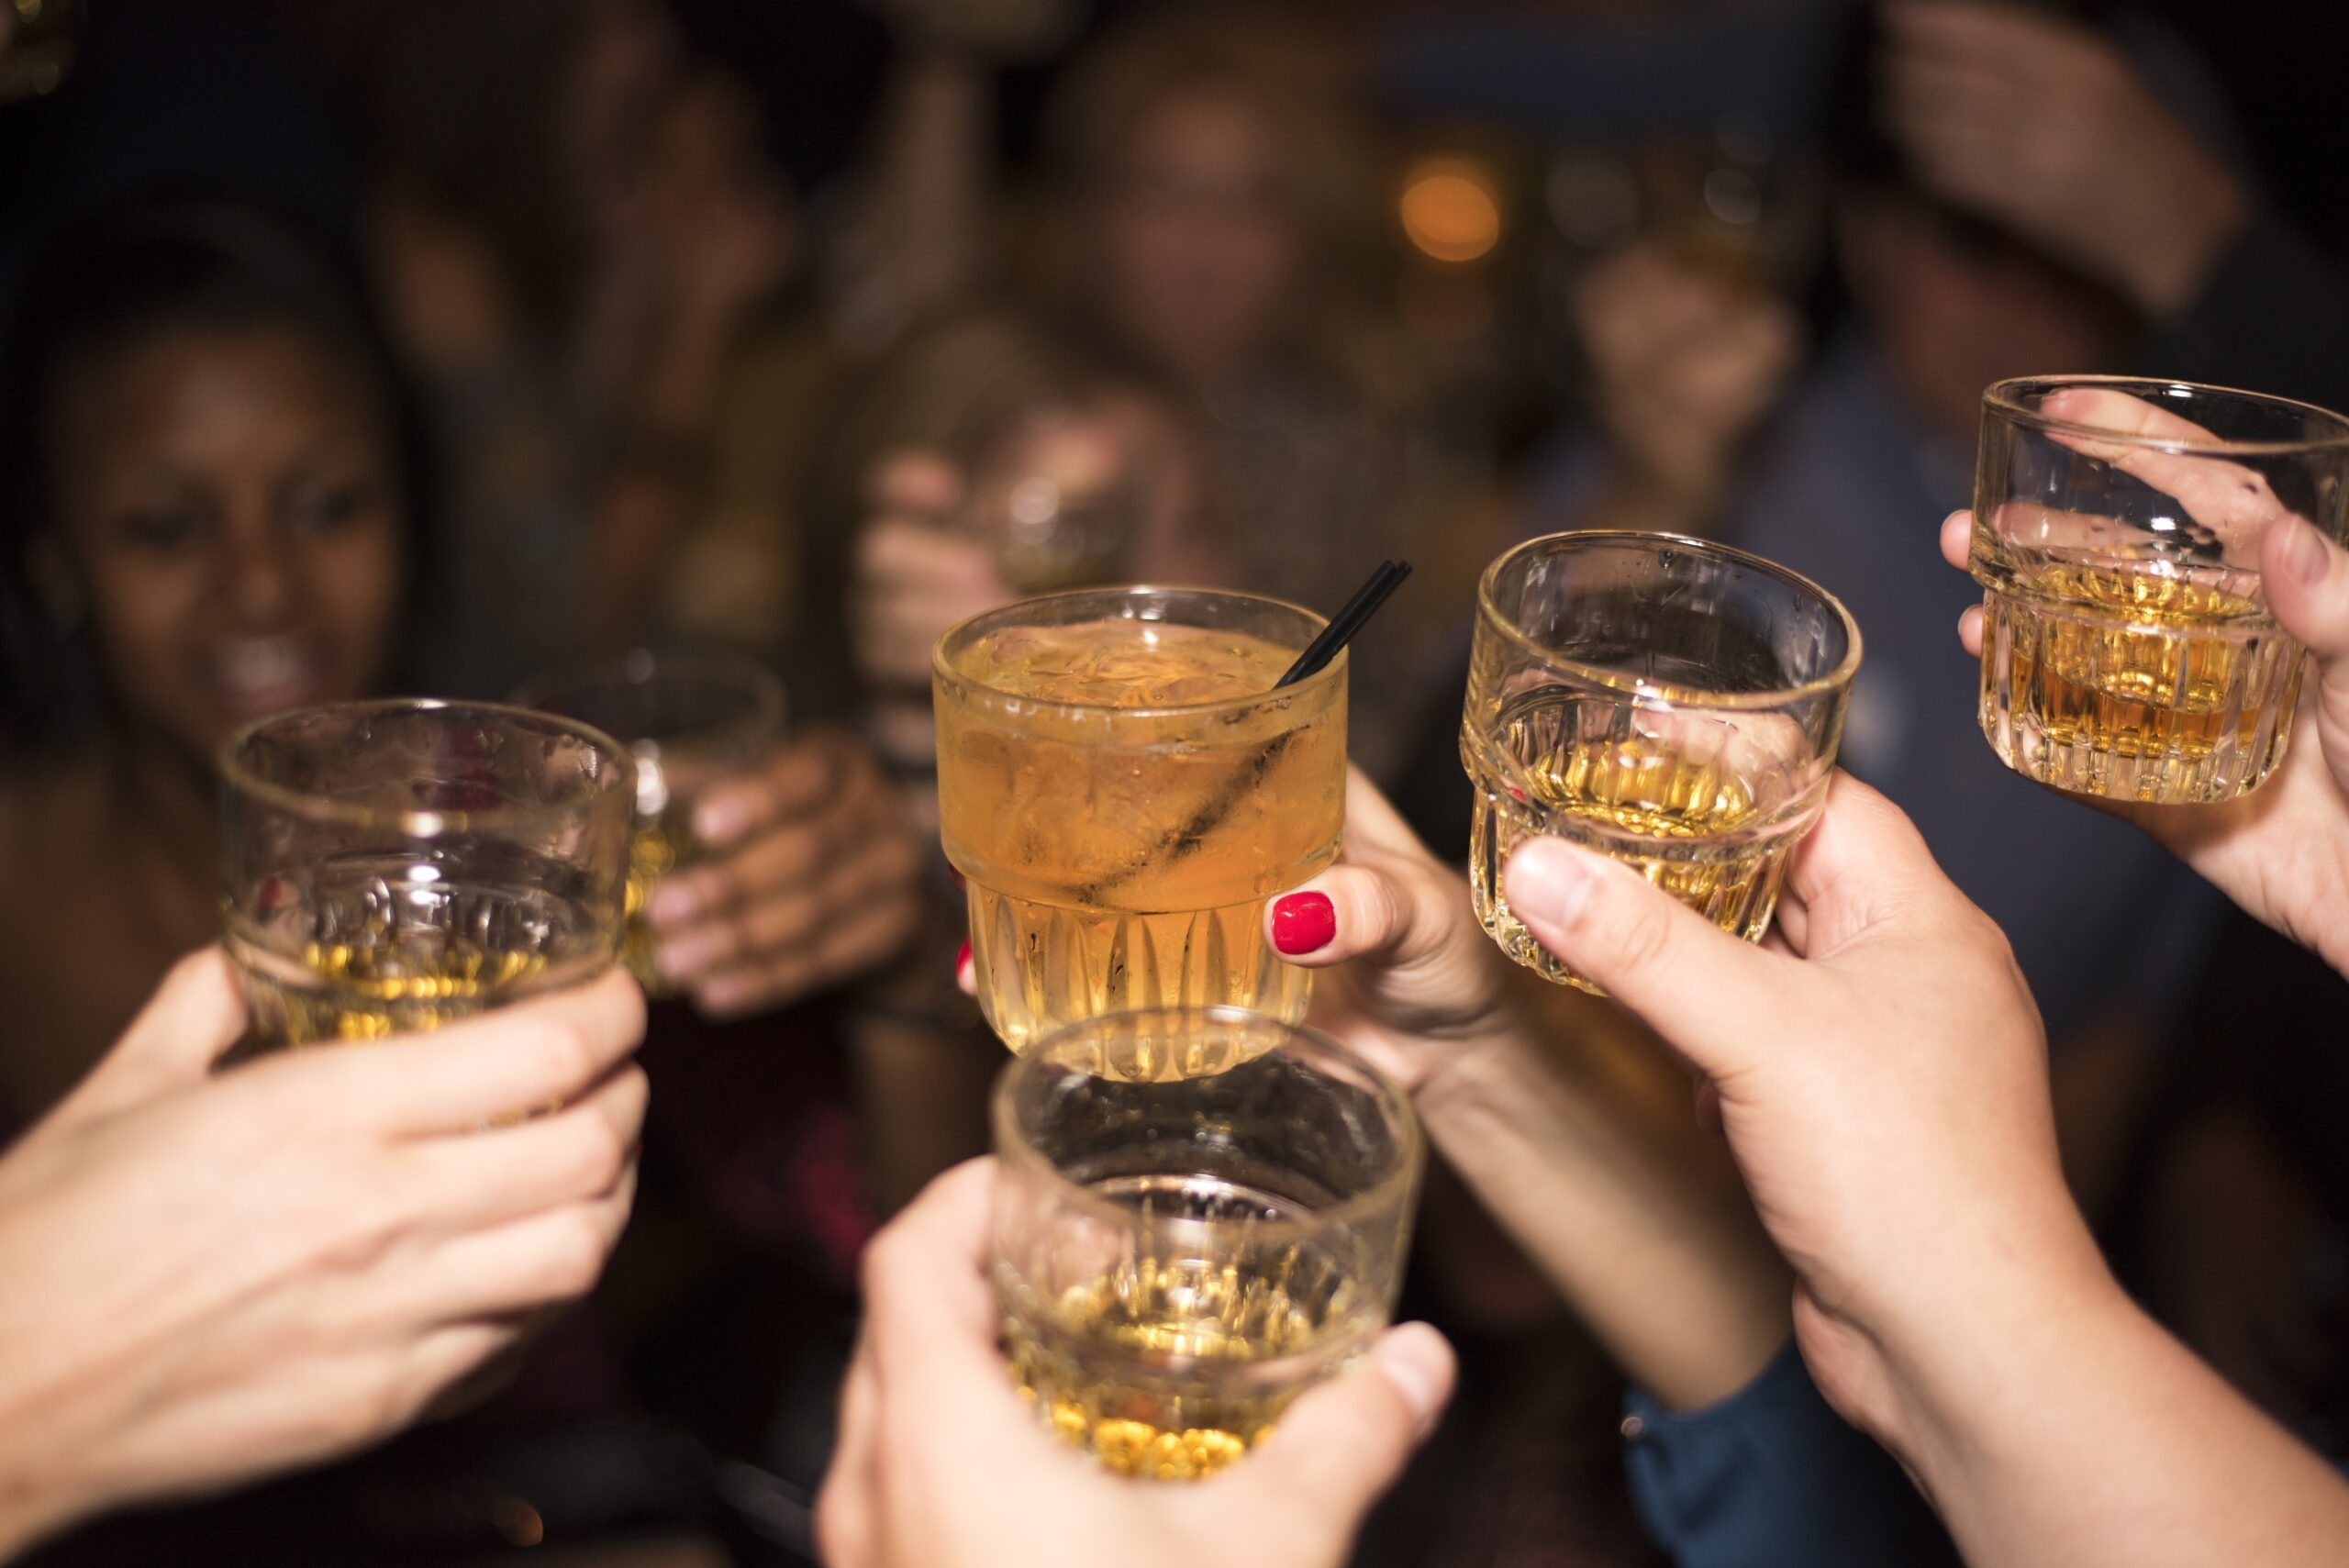 Как пить и не пьянеть в пятничном угаре. 8 способов и 1 секрет